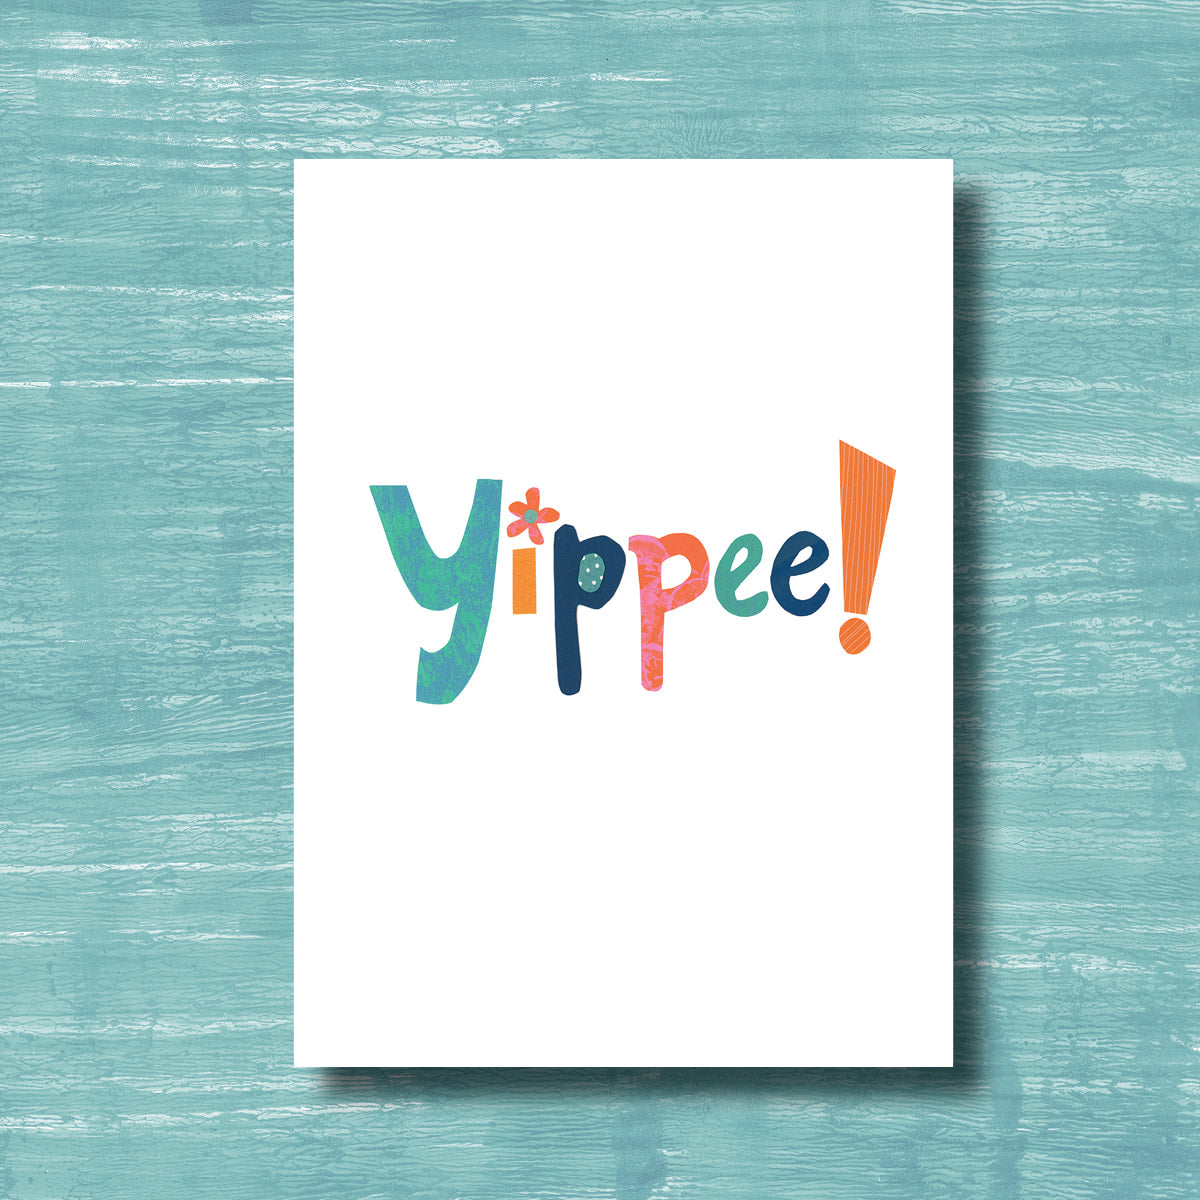 Yippee! - Greeting Card